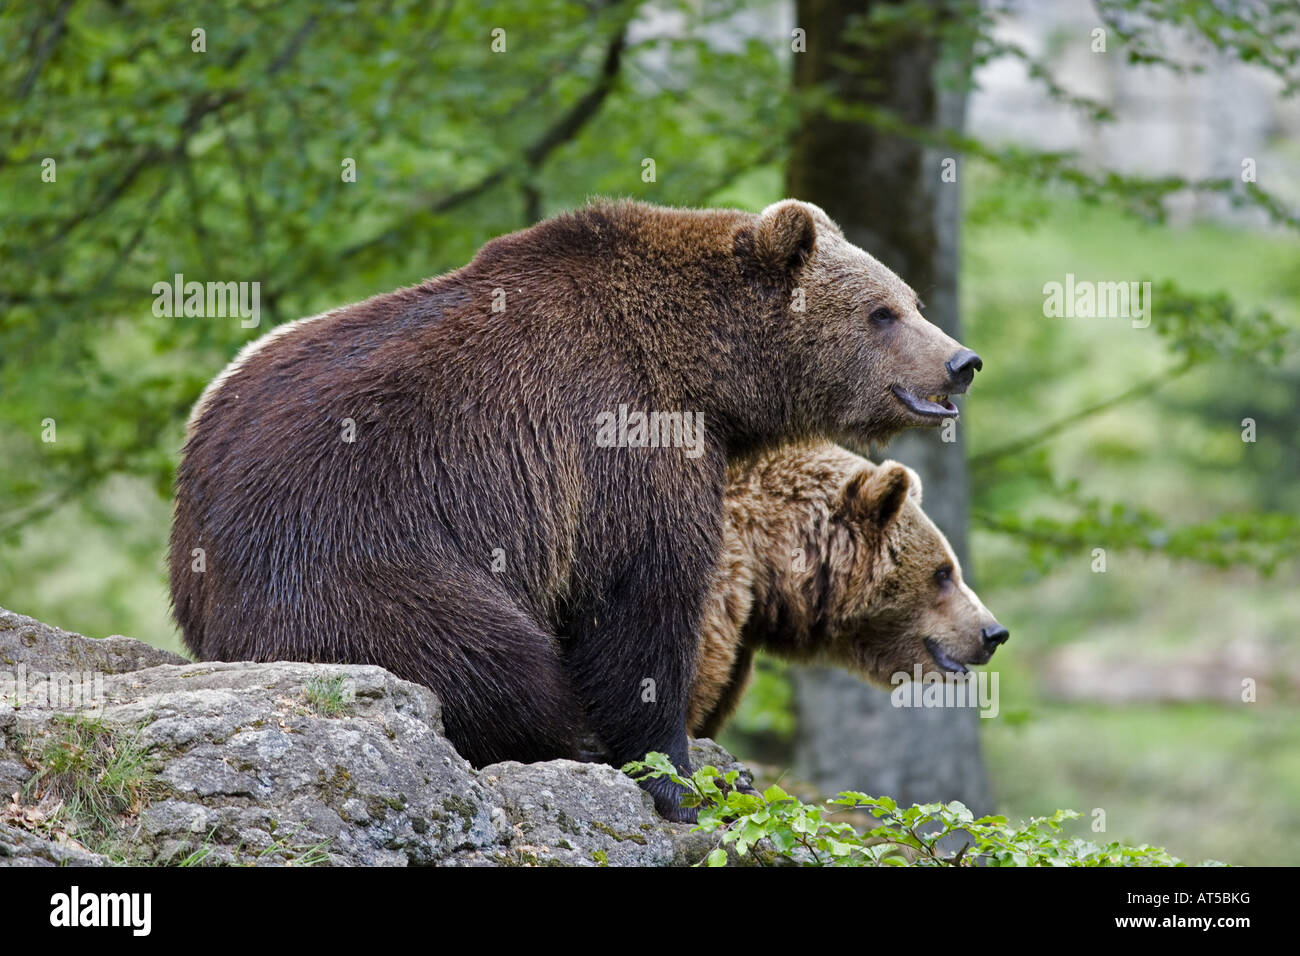 Zoología / animales, mamíferos / mamíferos Ursidae, oso pardo (Ursus arctos), dos osos sentado sobre una roca, el parque nacional del Bosque de Baviera, Alemania, distribución: Europa y Asia-Clearance-Info Additional-Rights-Not-Available Foto de stock